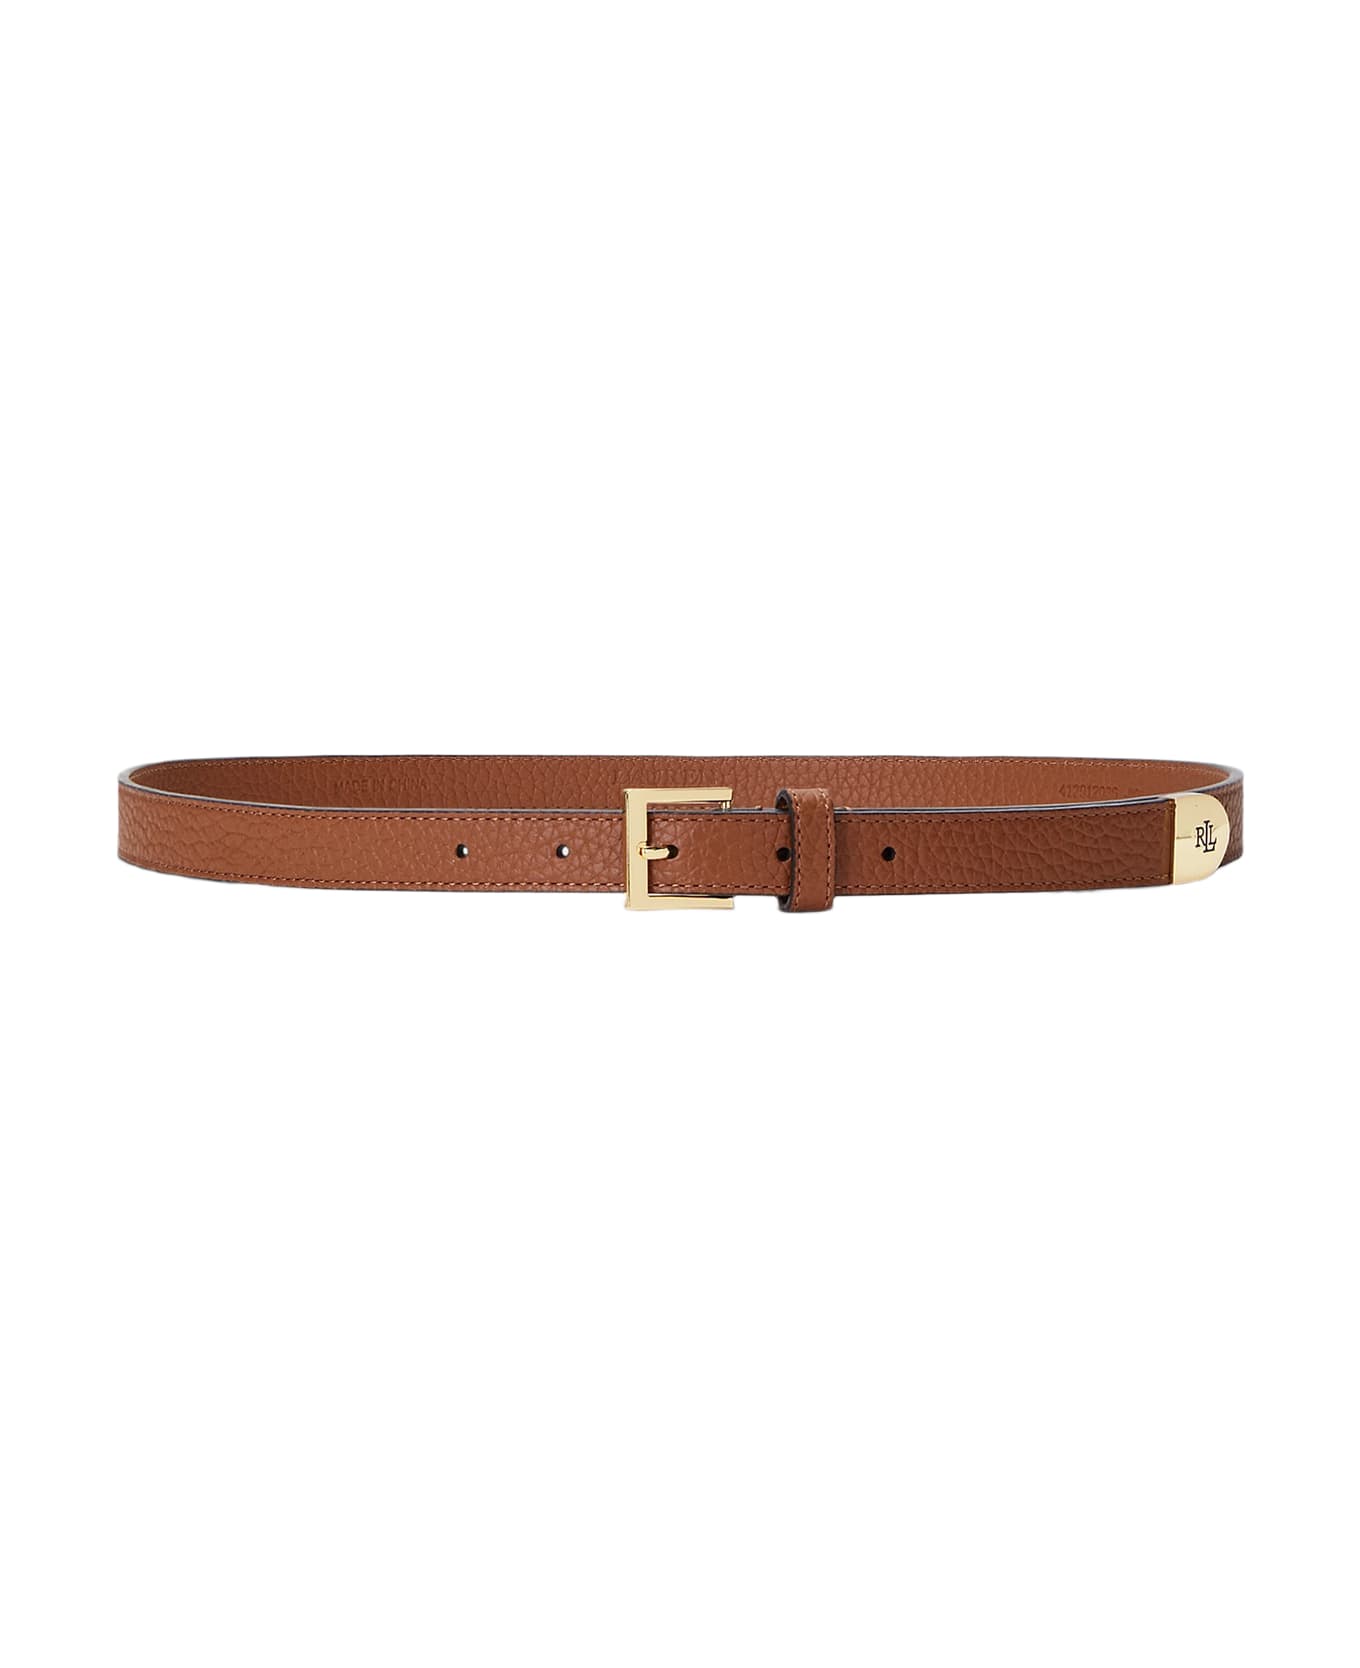 Ralph Lauren Lrl Cap 20 Belt Skinny - Brown